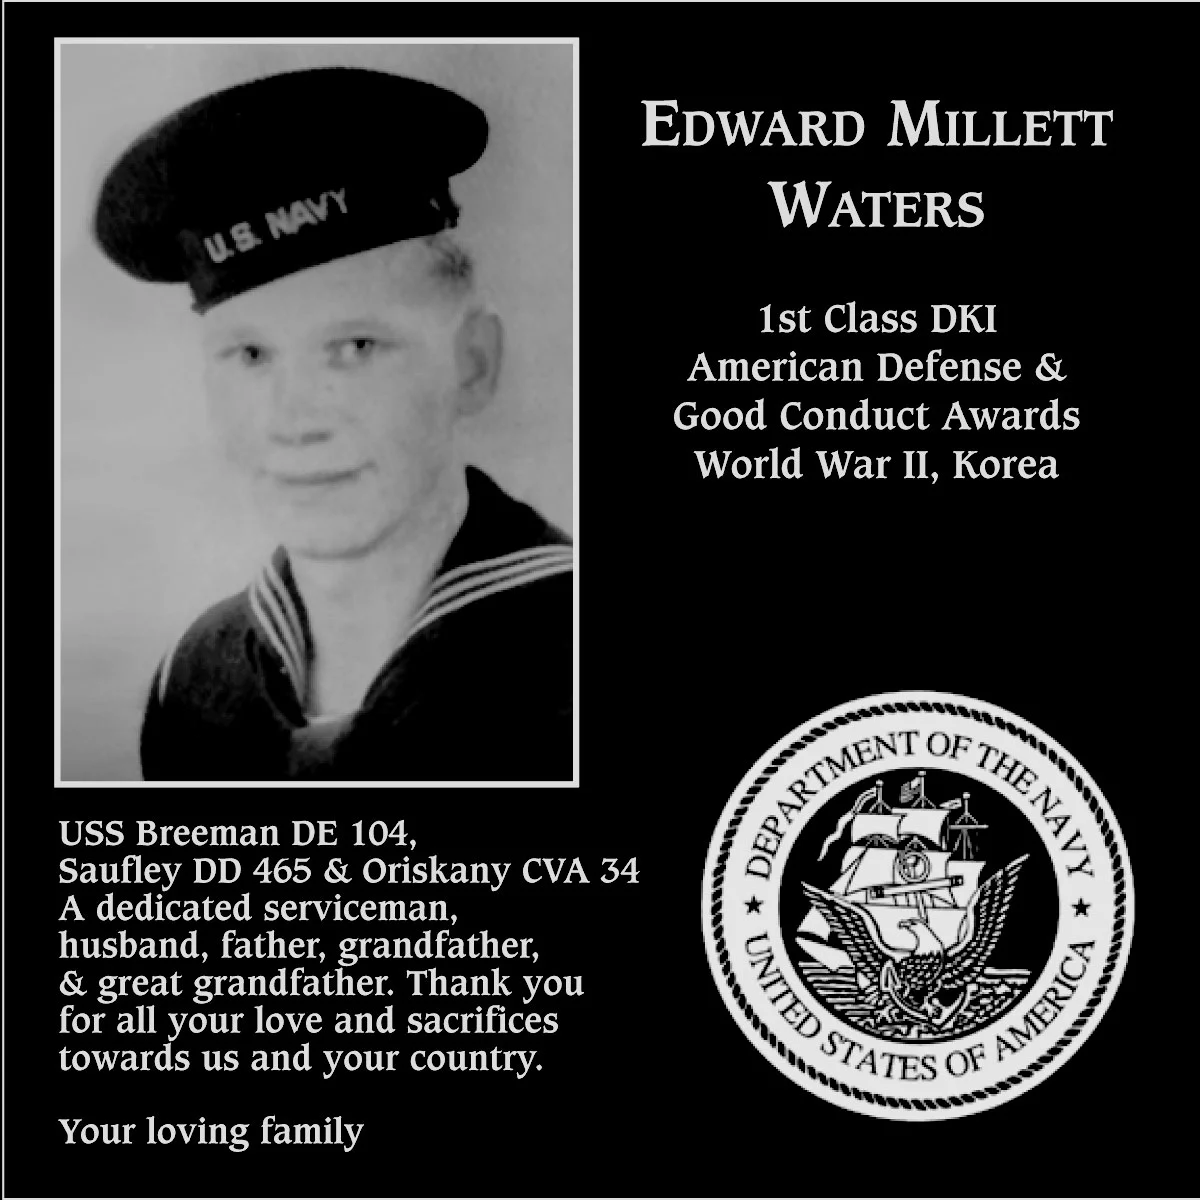 Edward Millett Waters